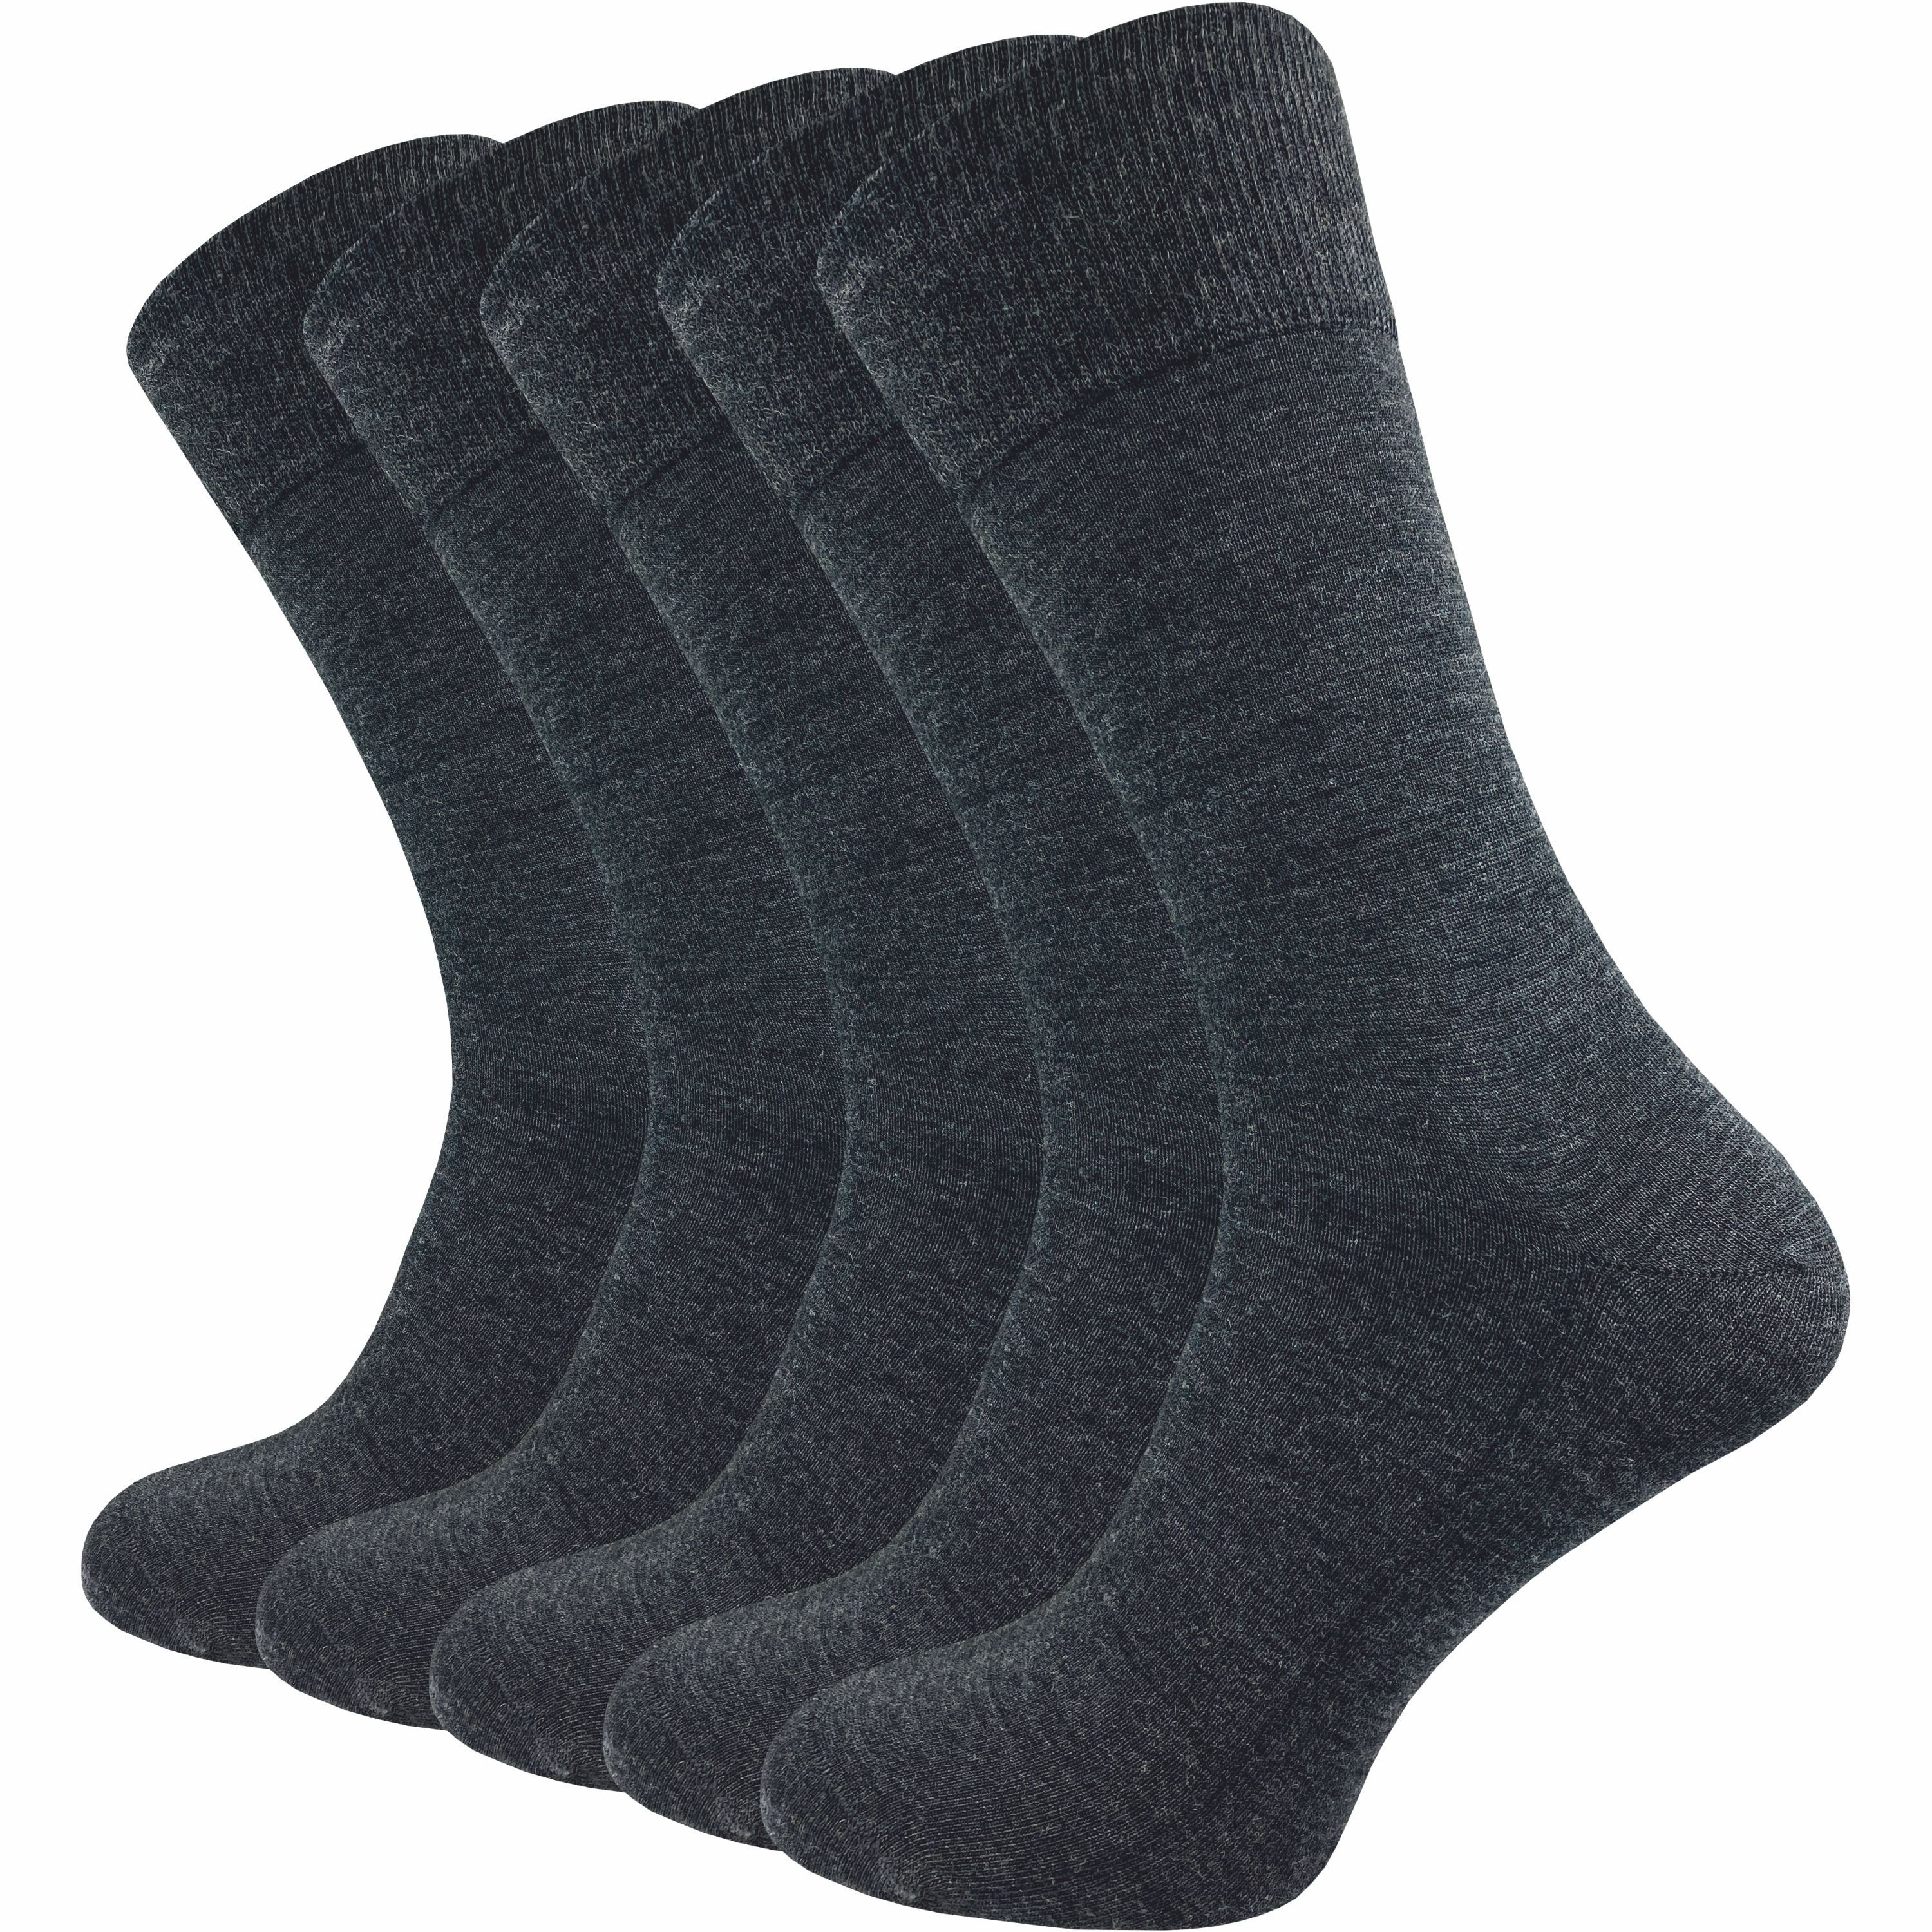 GAWILO Businesssocken für Herren aus 64% Schurwolle - Klimaregulierende Merino Socken (5 Paar) Socken aus Merino Wolle kühlen im Sommer und wärmen im Winter grau